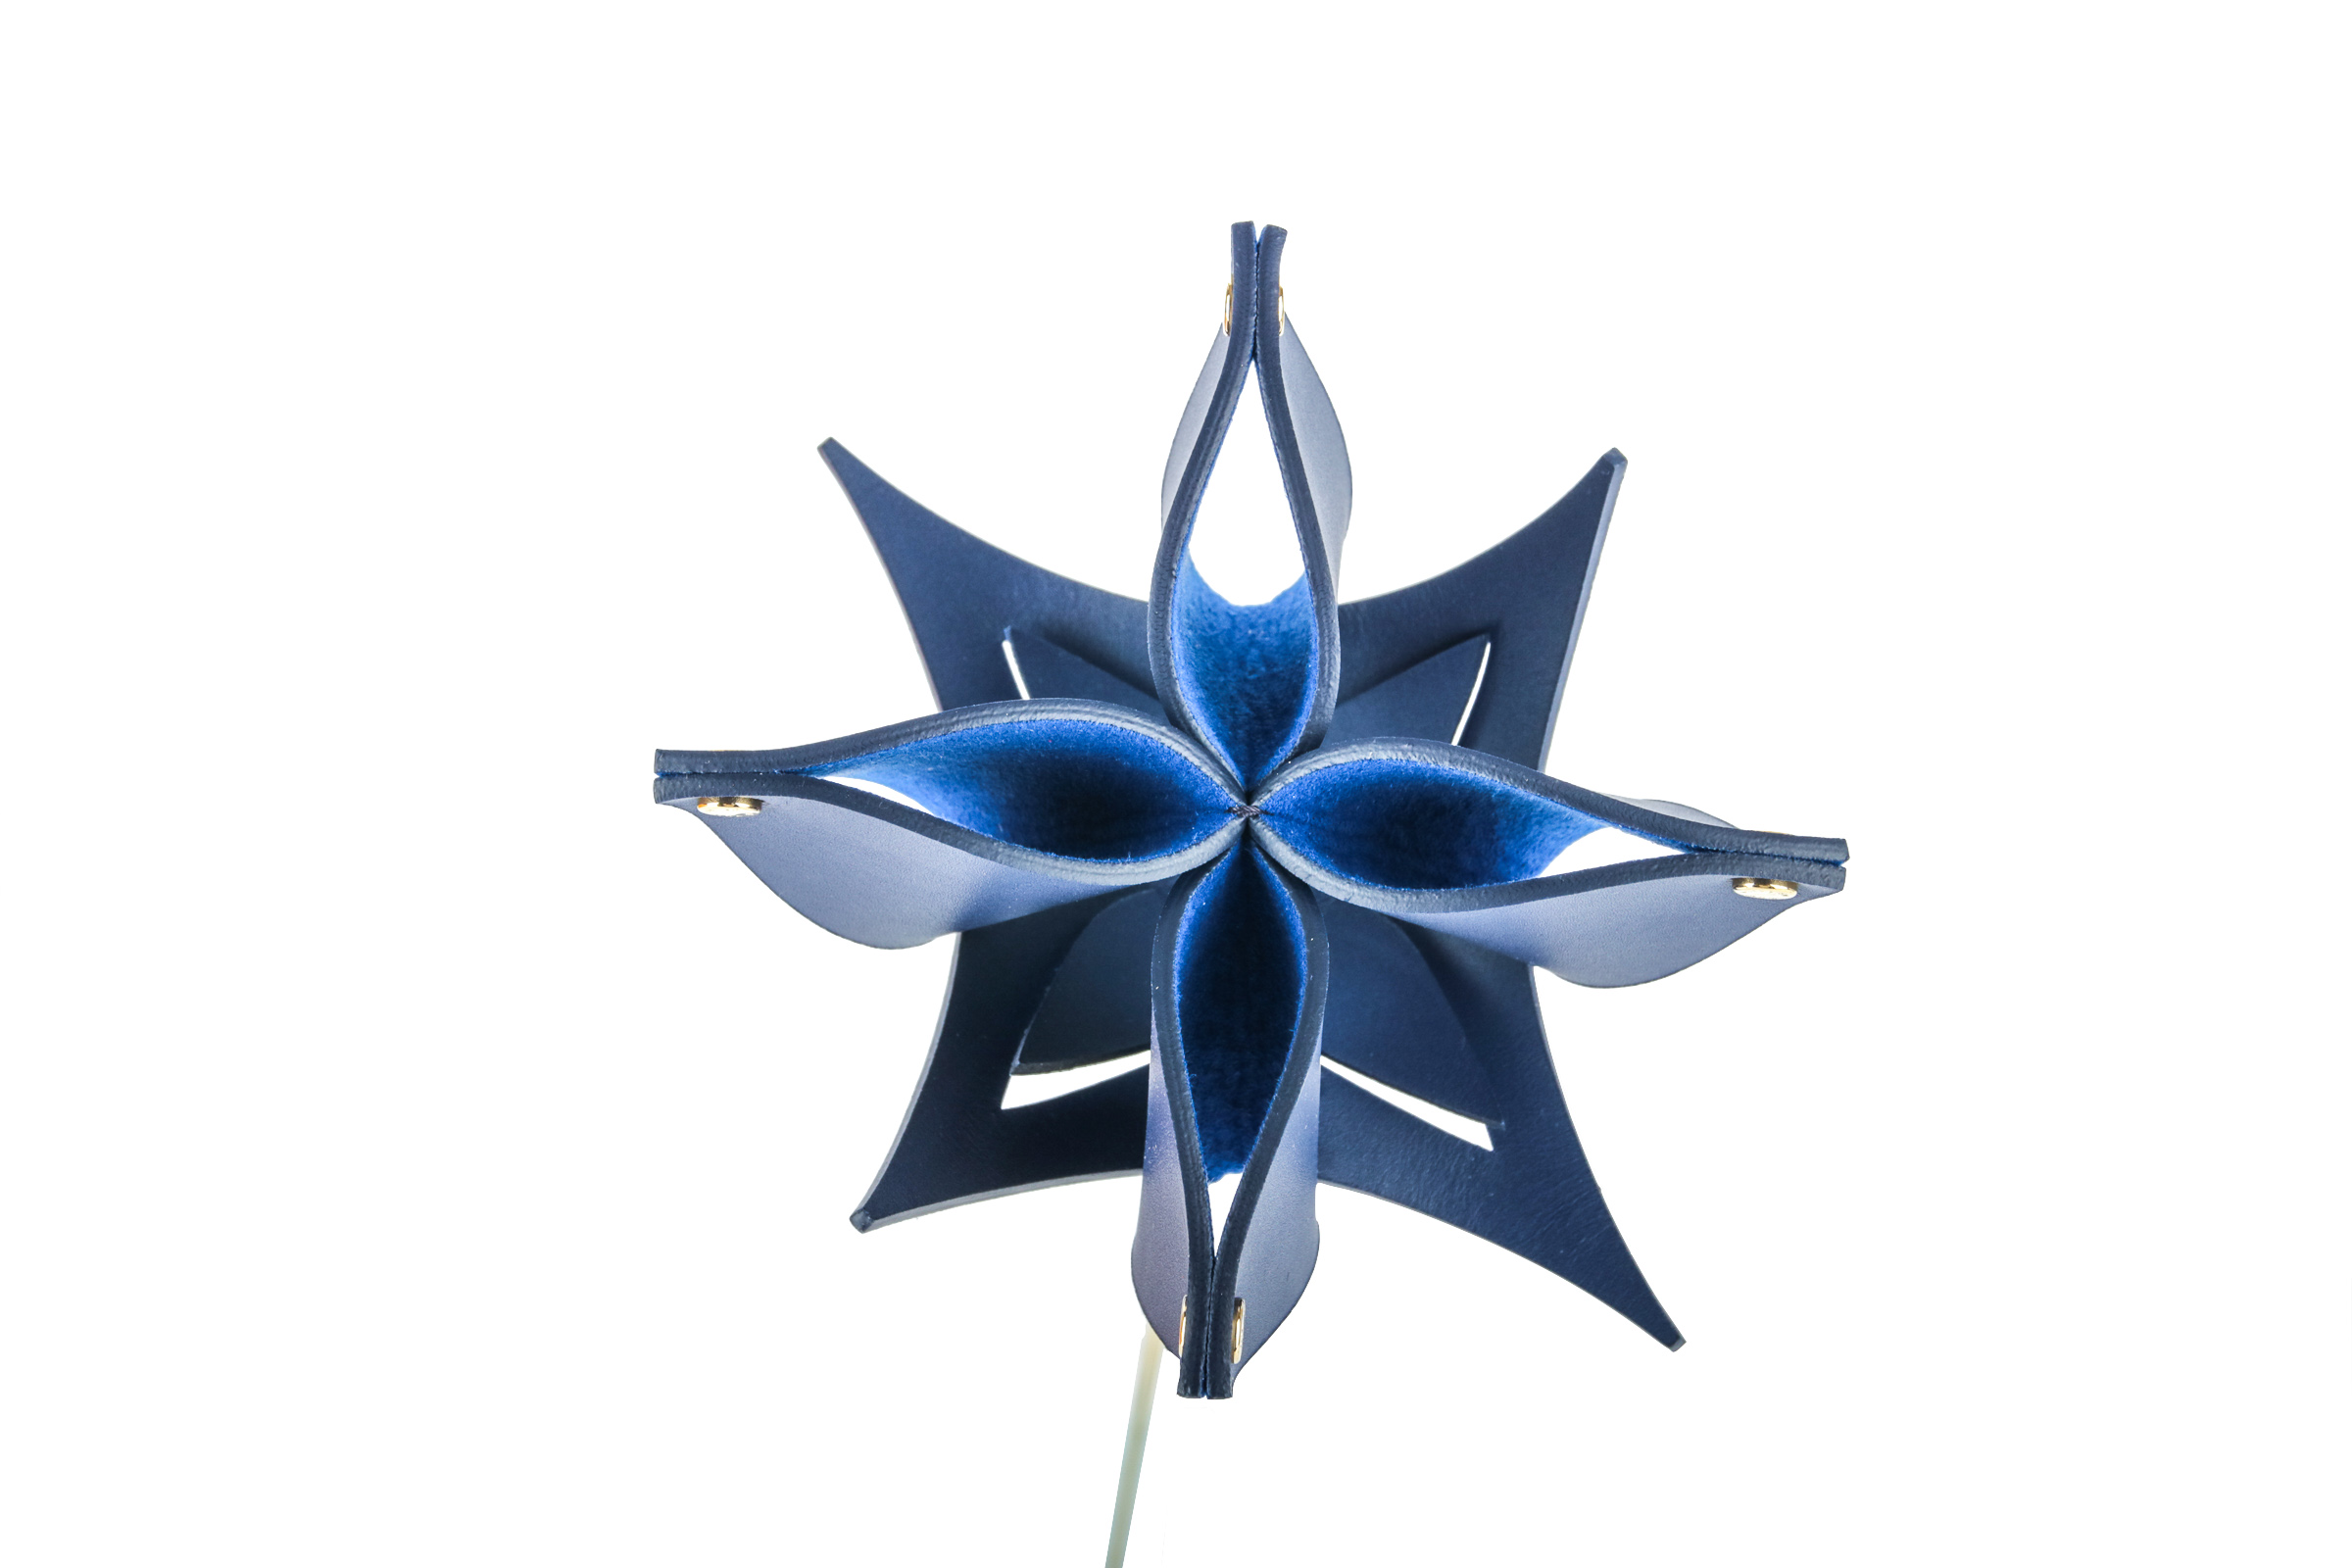 Louis Vuitton Origami Flower by Atelier Oï in blau